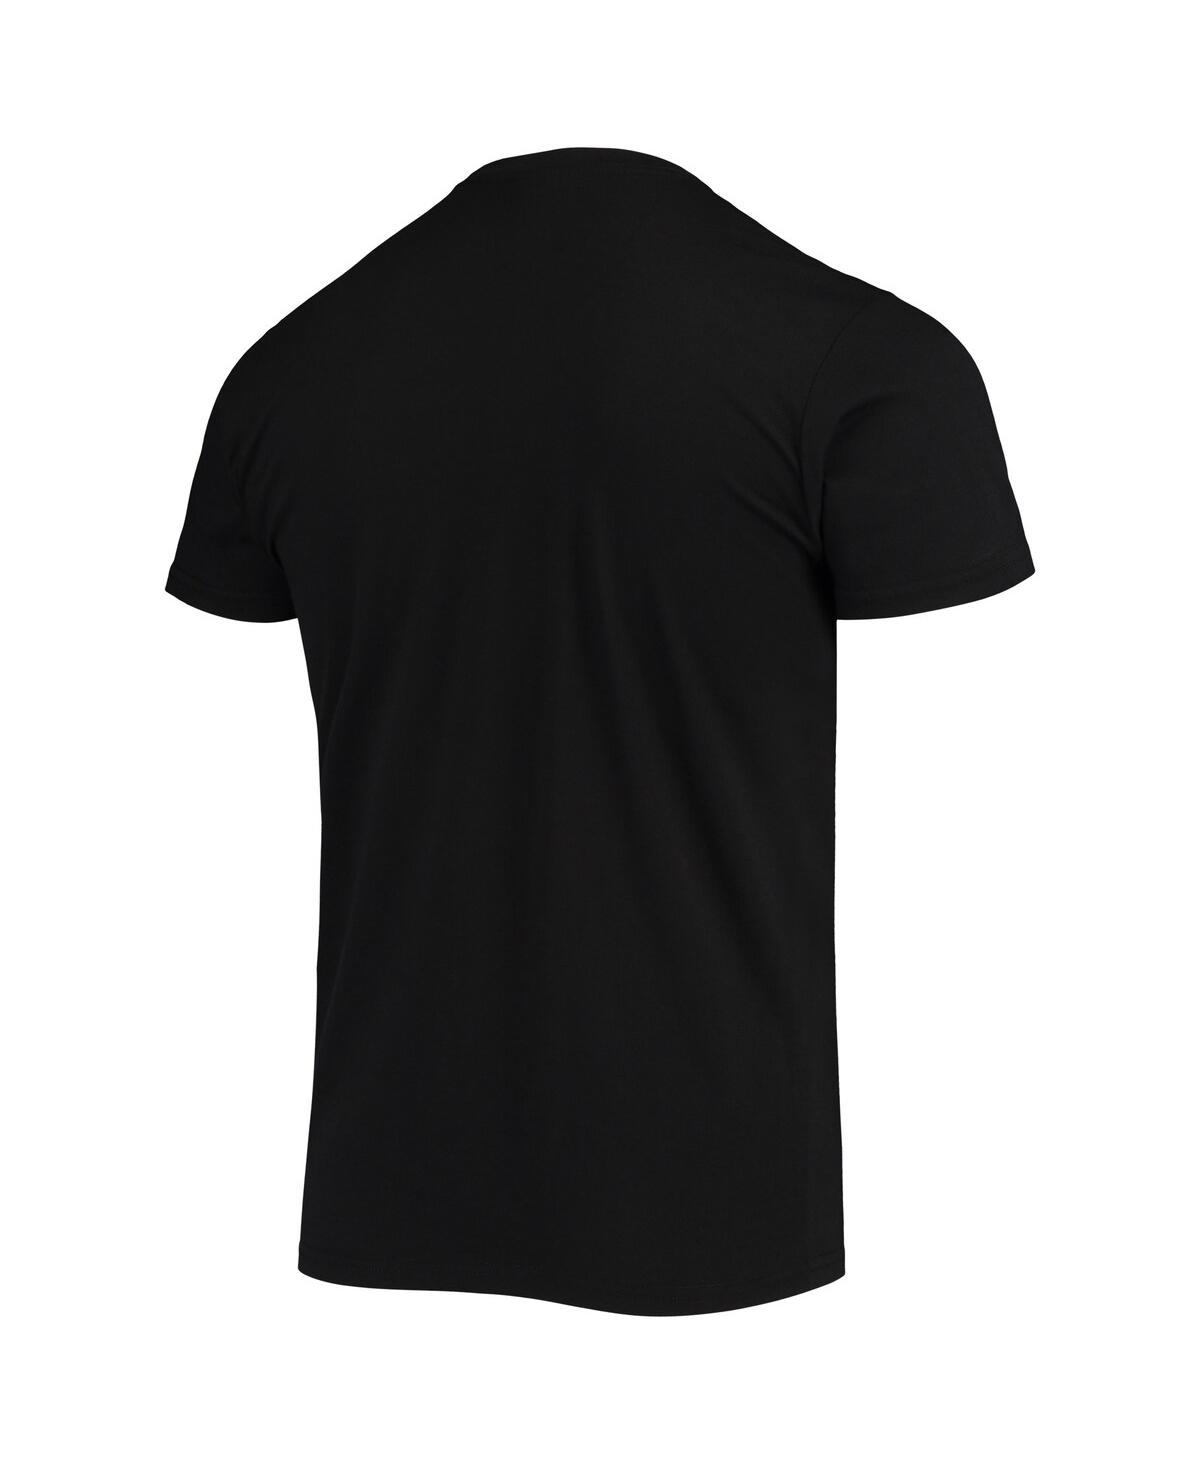 Shop Sportiqe Men's  Black Phoenix Suns The Valley Pixel City Edition Tri-blend T-shirt